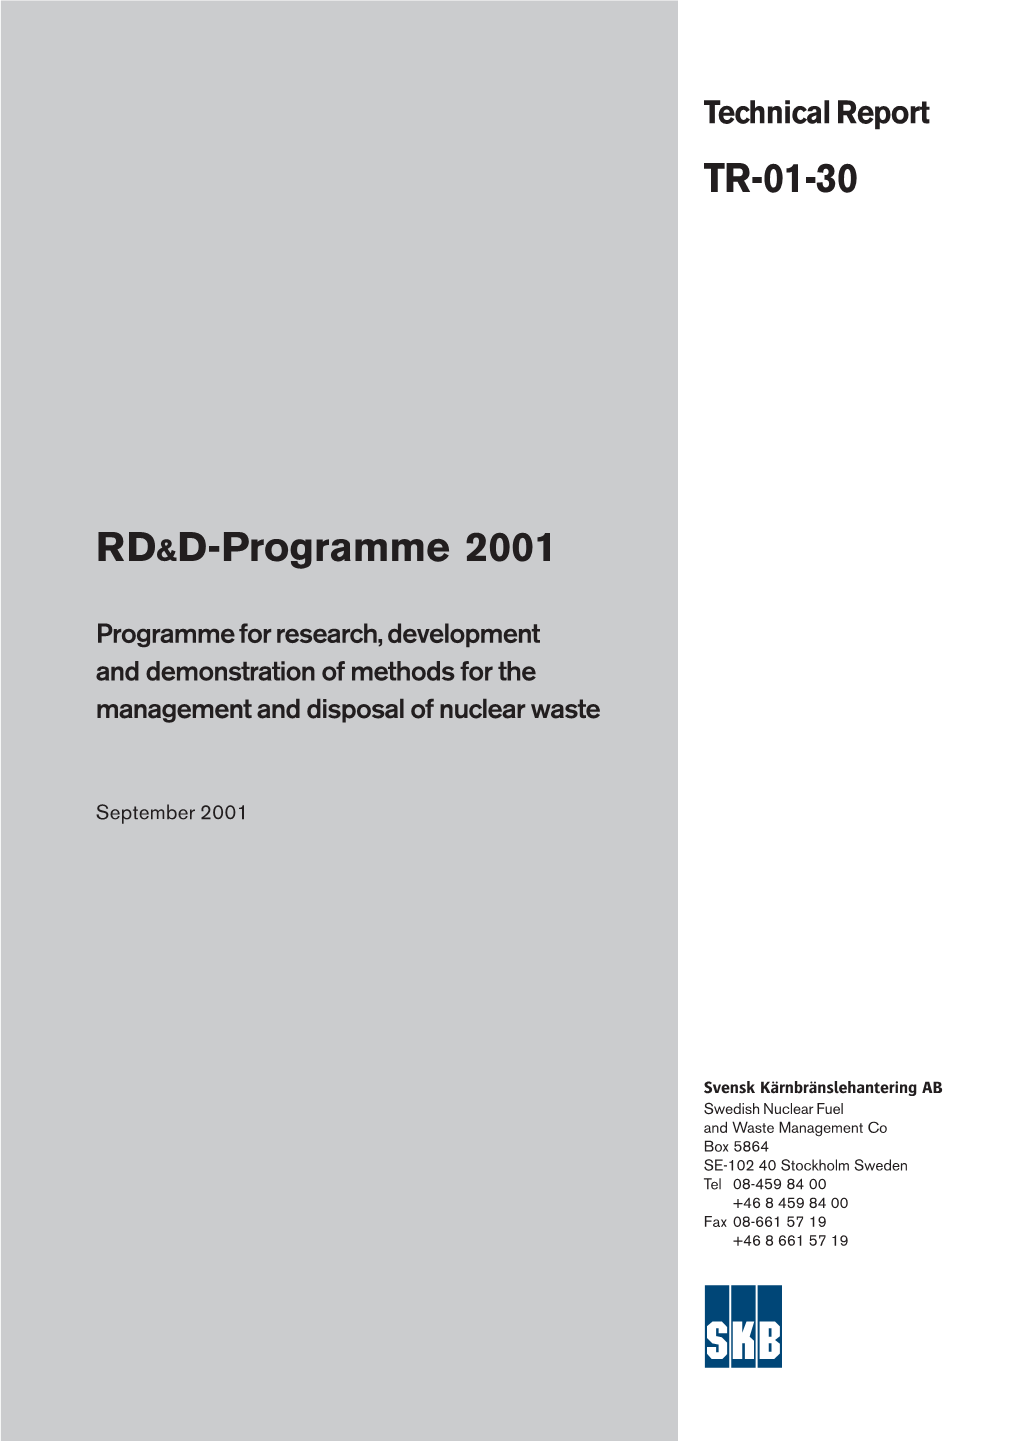 RD&D-Programme 2001 TR-01-30